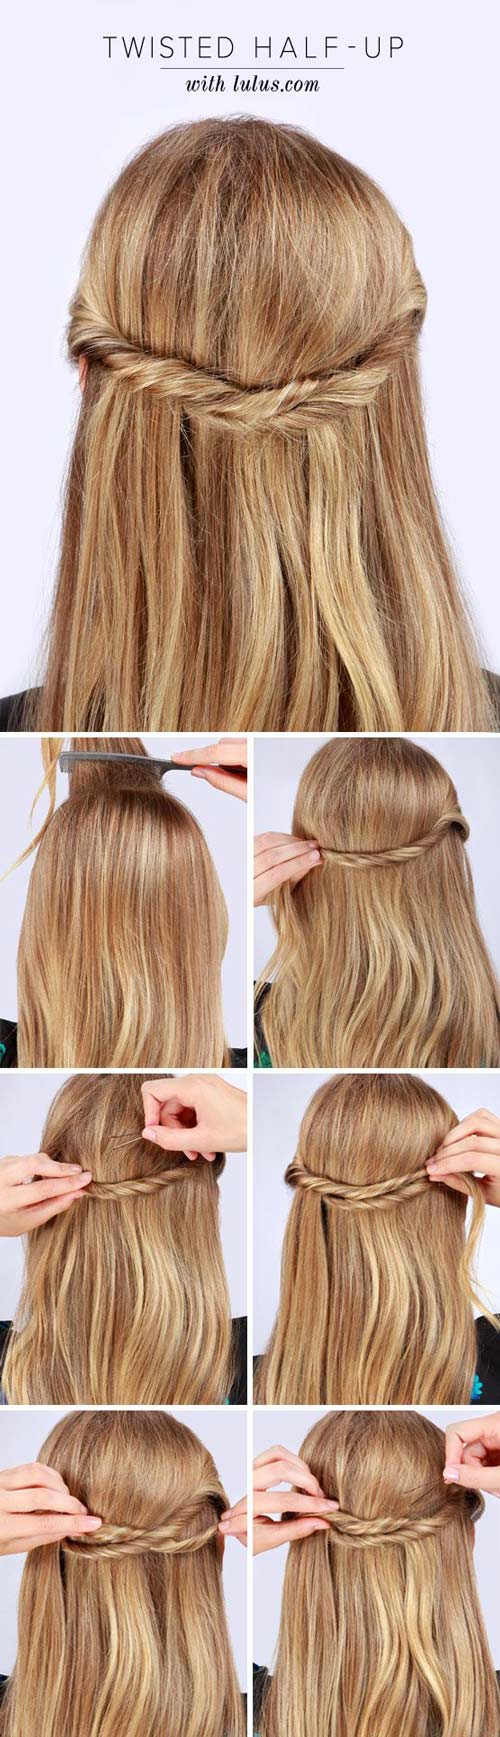 15 Peinados para disfrutar del verano con el cabello suelto